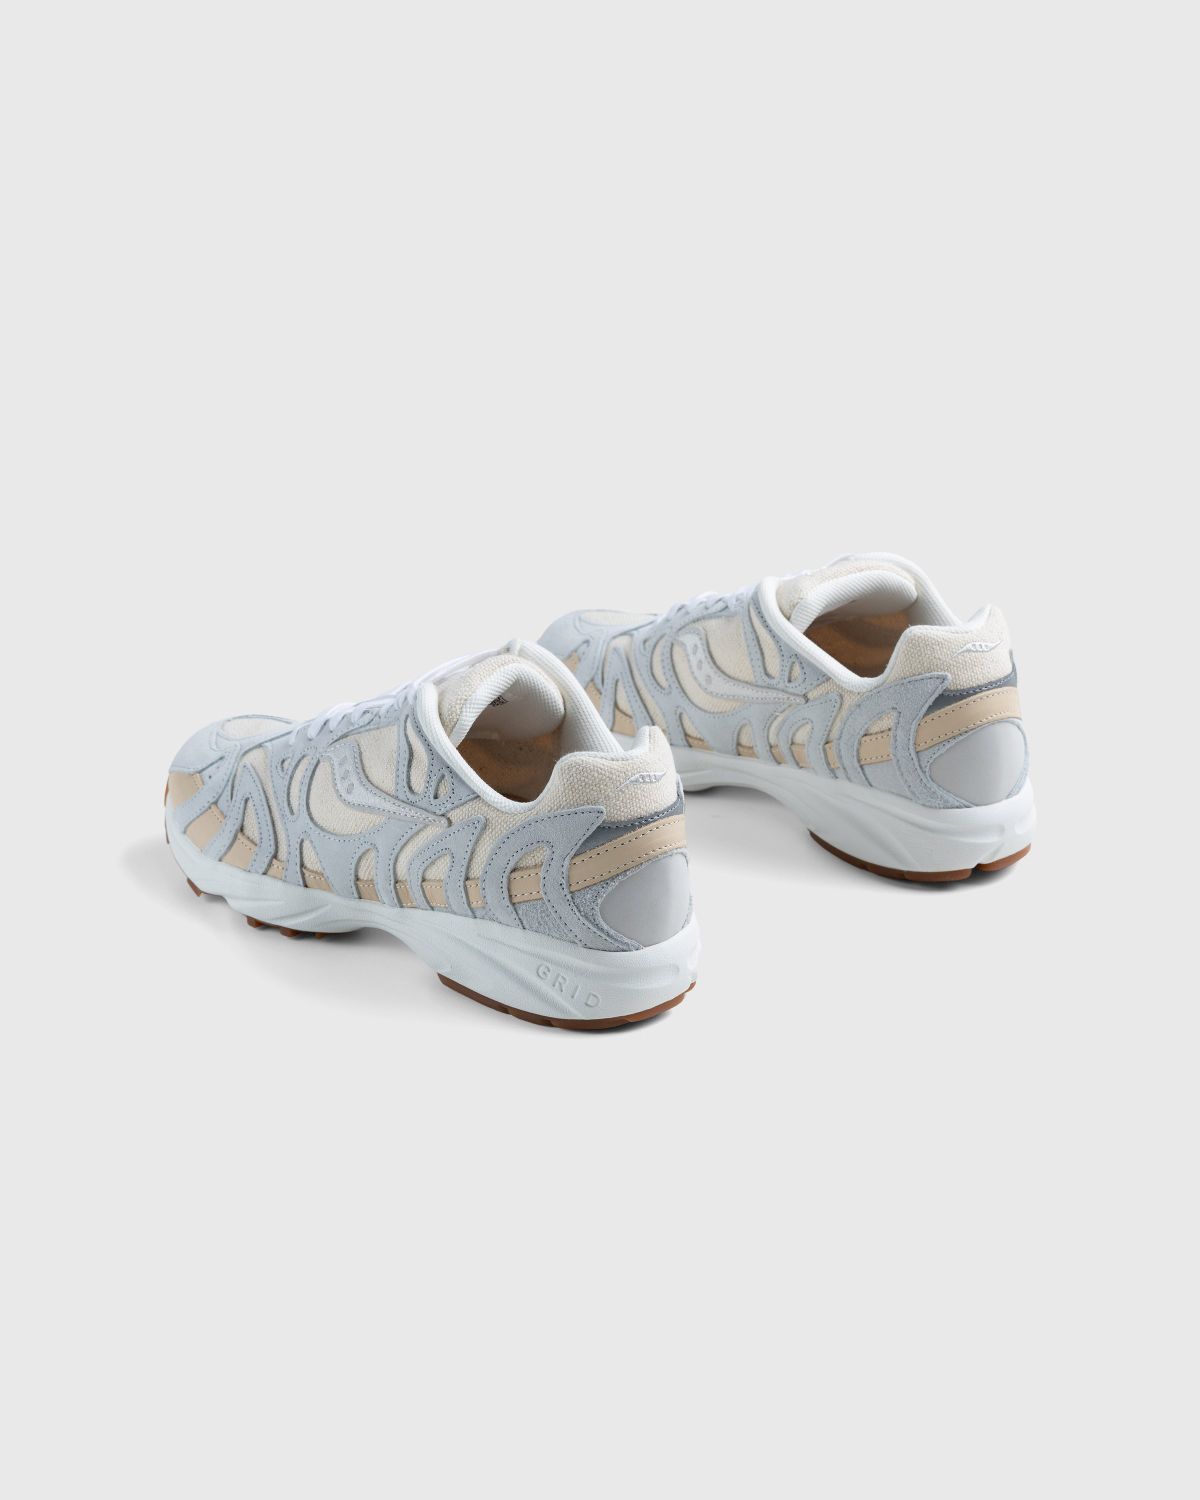 Saucony – Grid Azura 2000 Undyed Beige - Low Top Sneakers - Beige - Image 4